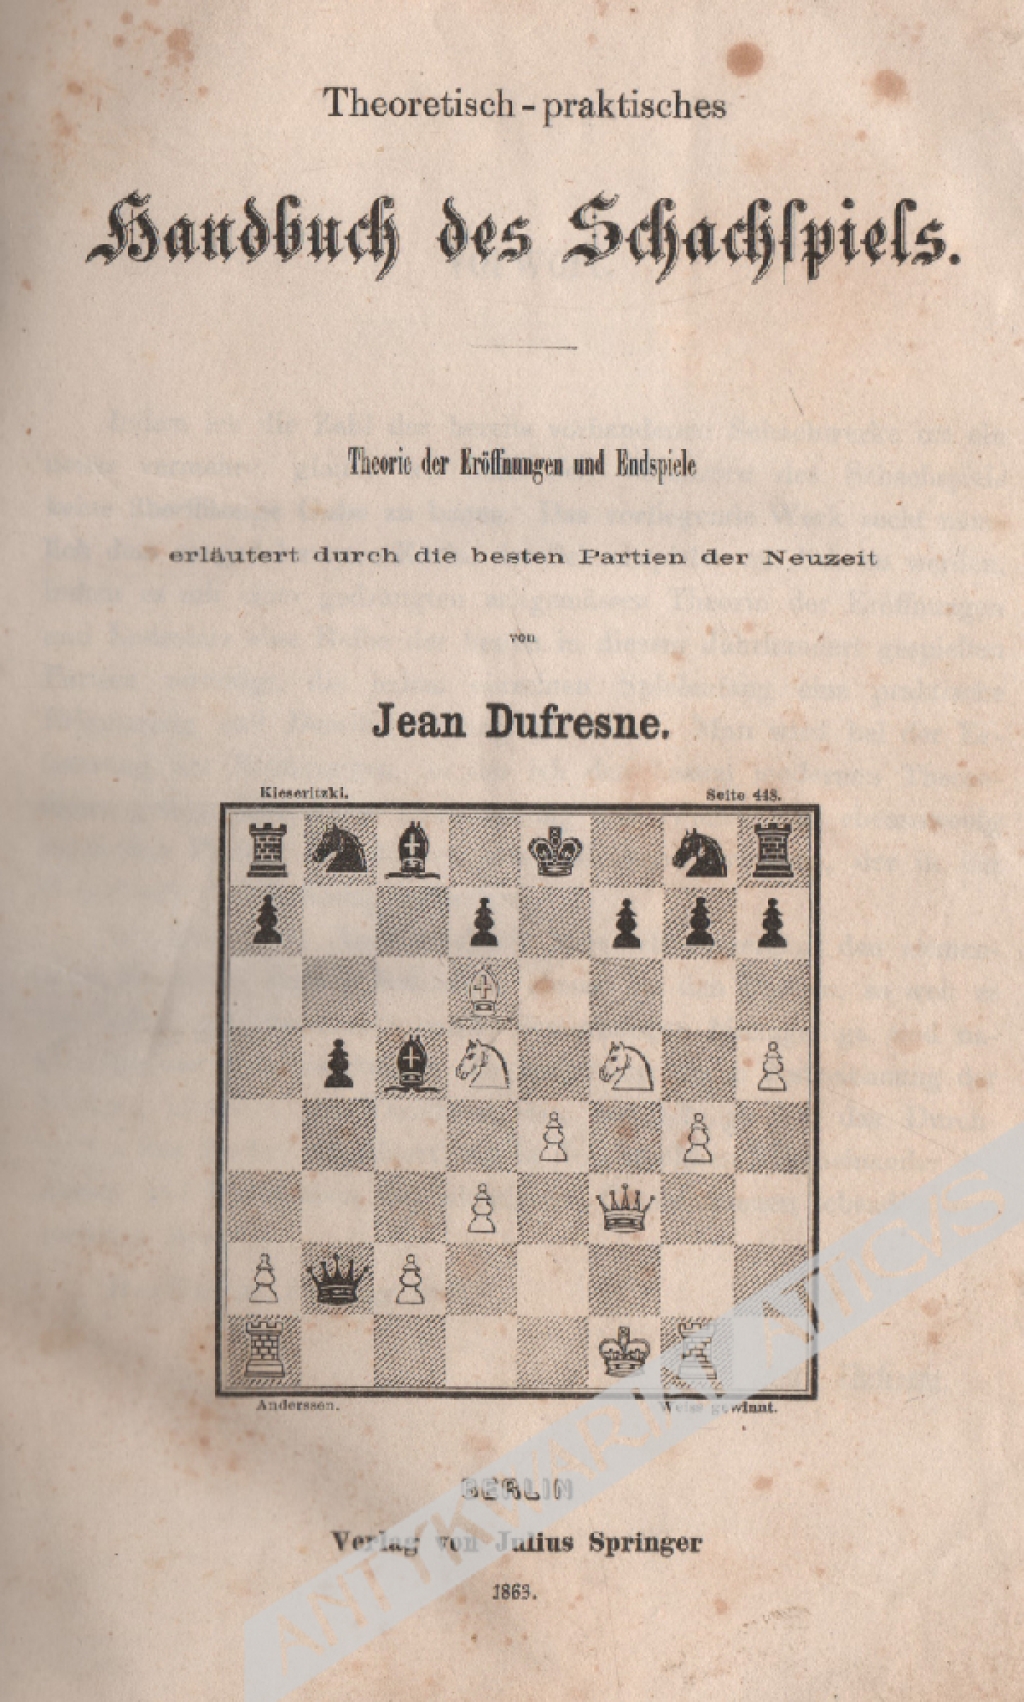 Theoretisch-praktisches Handbuch des Schachspiels. Theorie der Eröffnungen und Endspiele erläutert durch die besten Partien der Neuzeit.